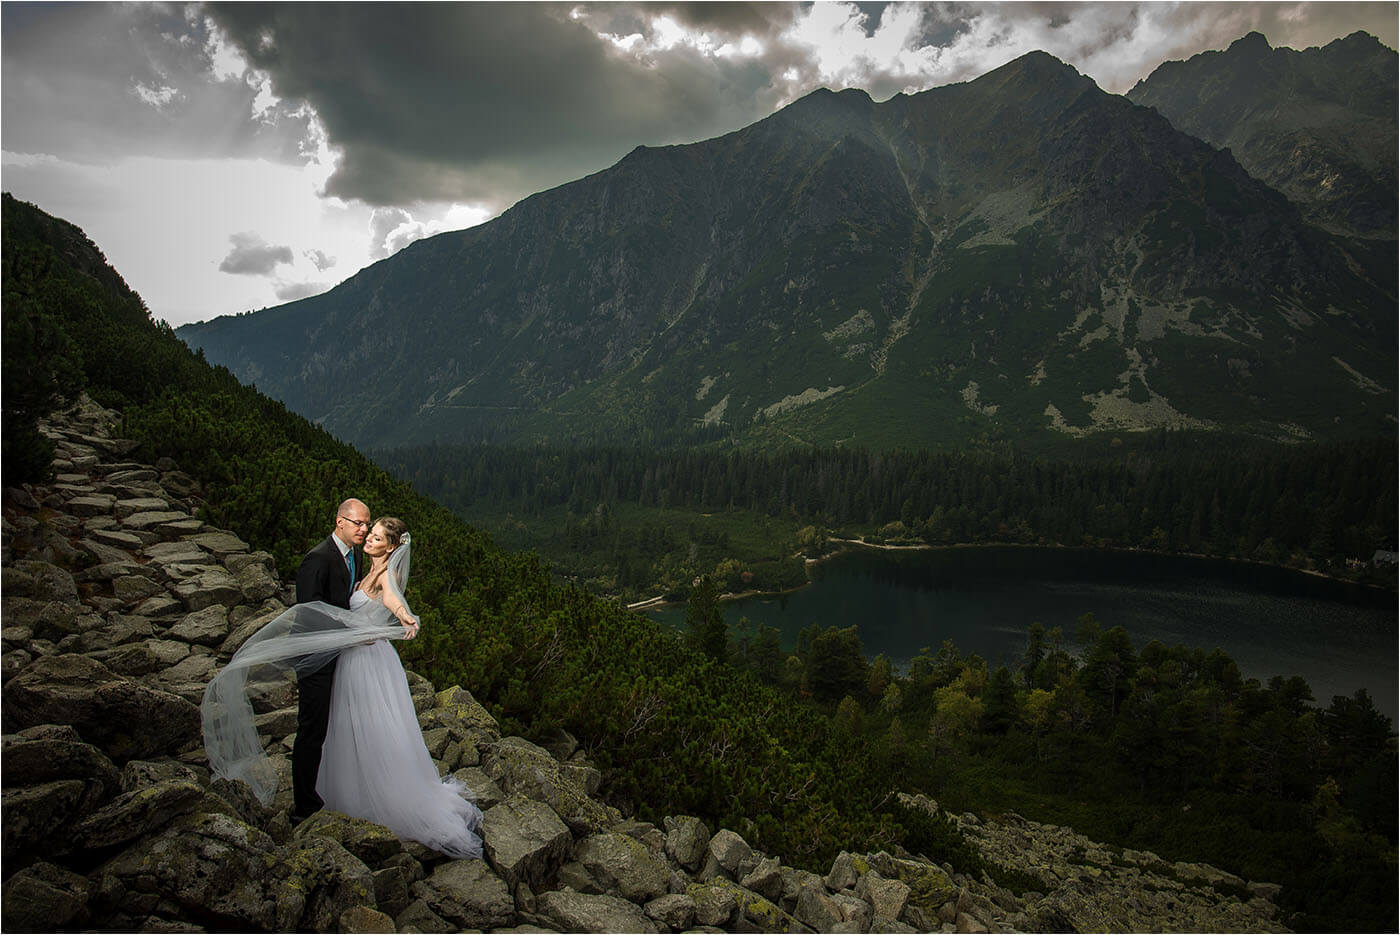 Kreatív fotózás - Destination Wedding Photoshoot in Slovakia